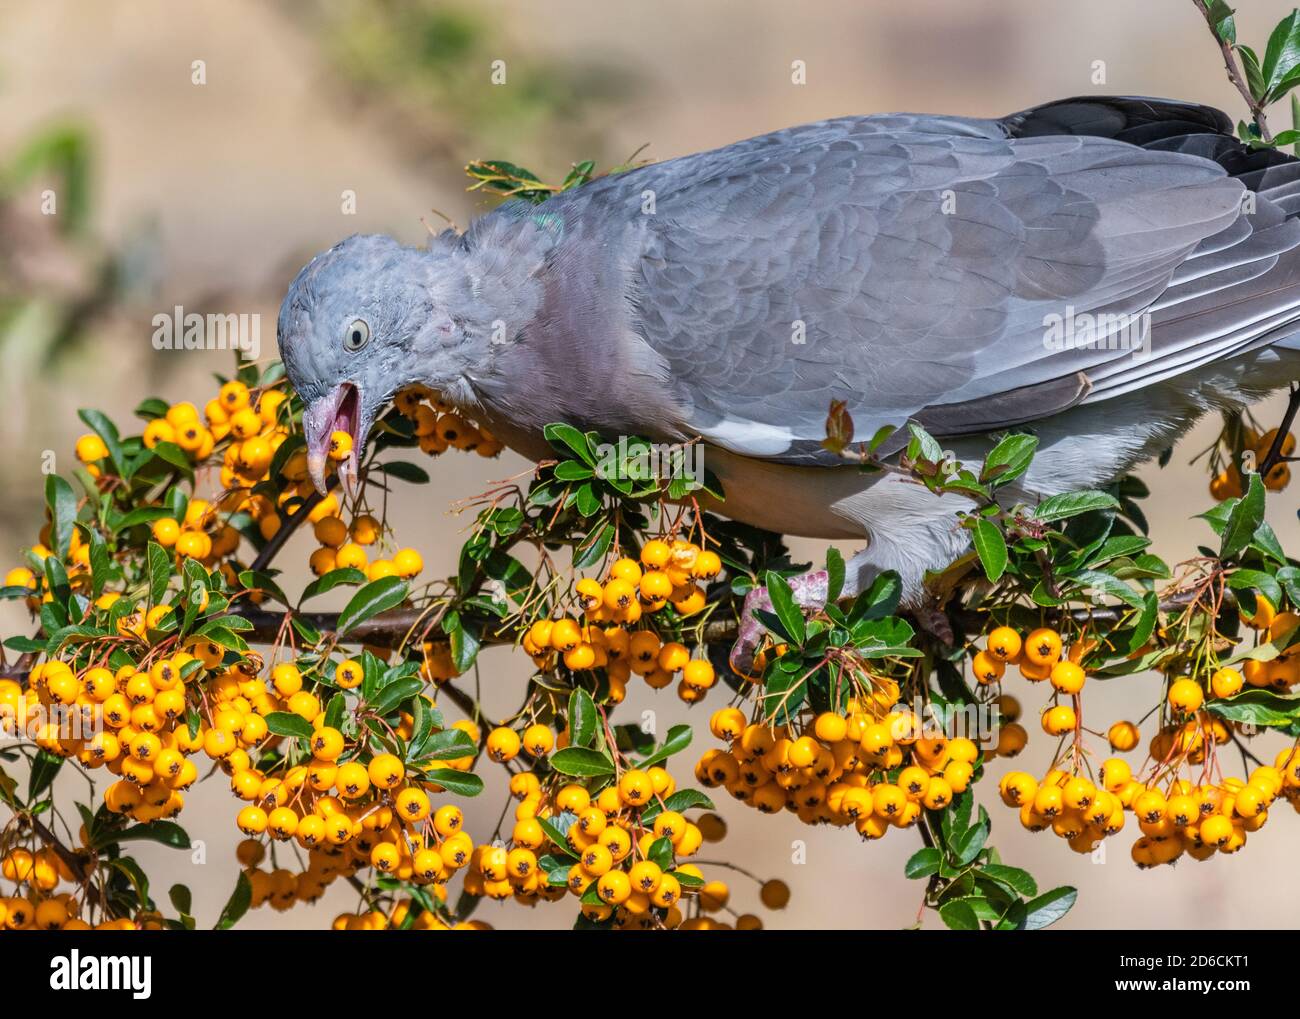 Pigeon féral (Columba livia domestica) manger et se nourrir sur des baies d'orange provenant d'un arbuste de feu (Pyracantha) en automne à West Sussex, Angleterre, Royaume-Uni. Banque D'Images